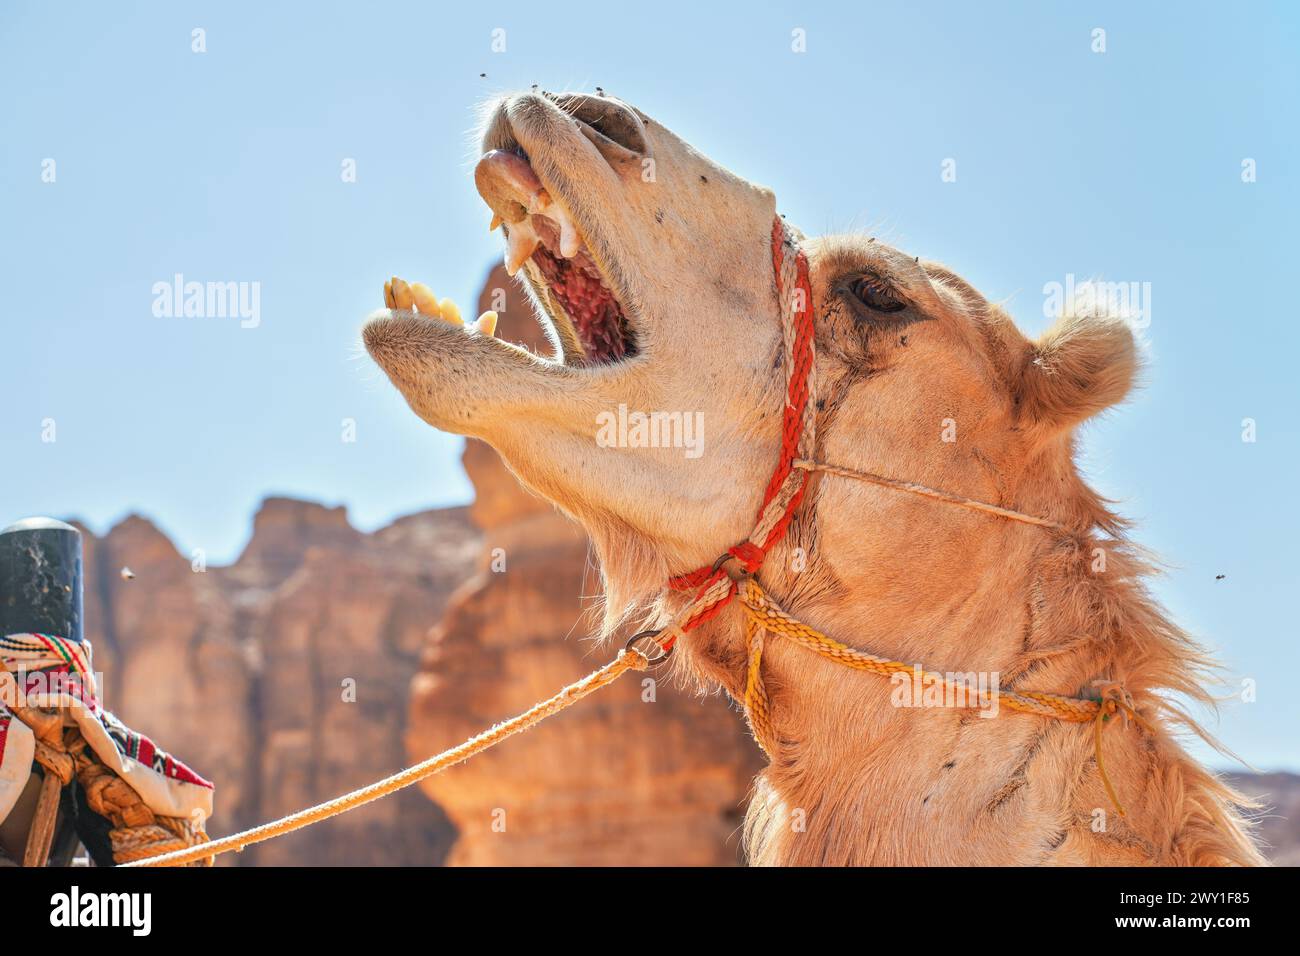 Tête de chameau avec la bouche ouverte - dents visibles, détail en gros plan avec désert rocheux flou et fond de ciel clair Banque D'Images